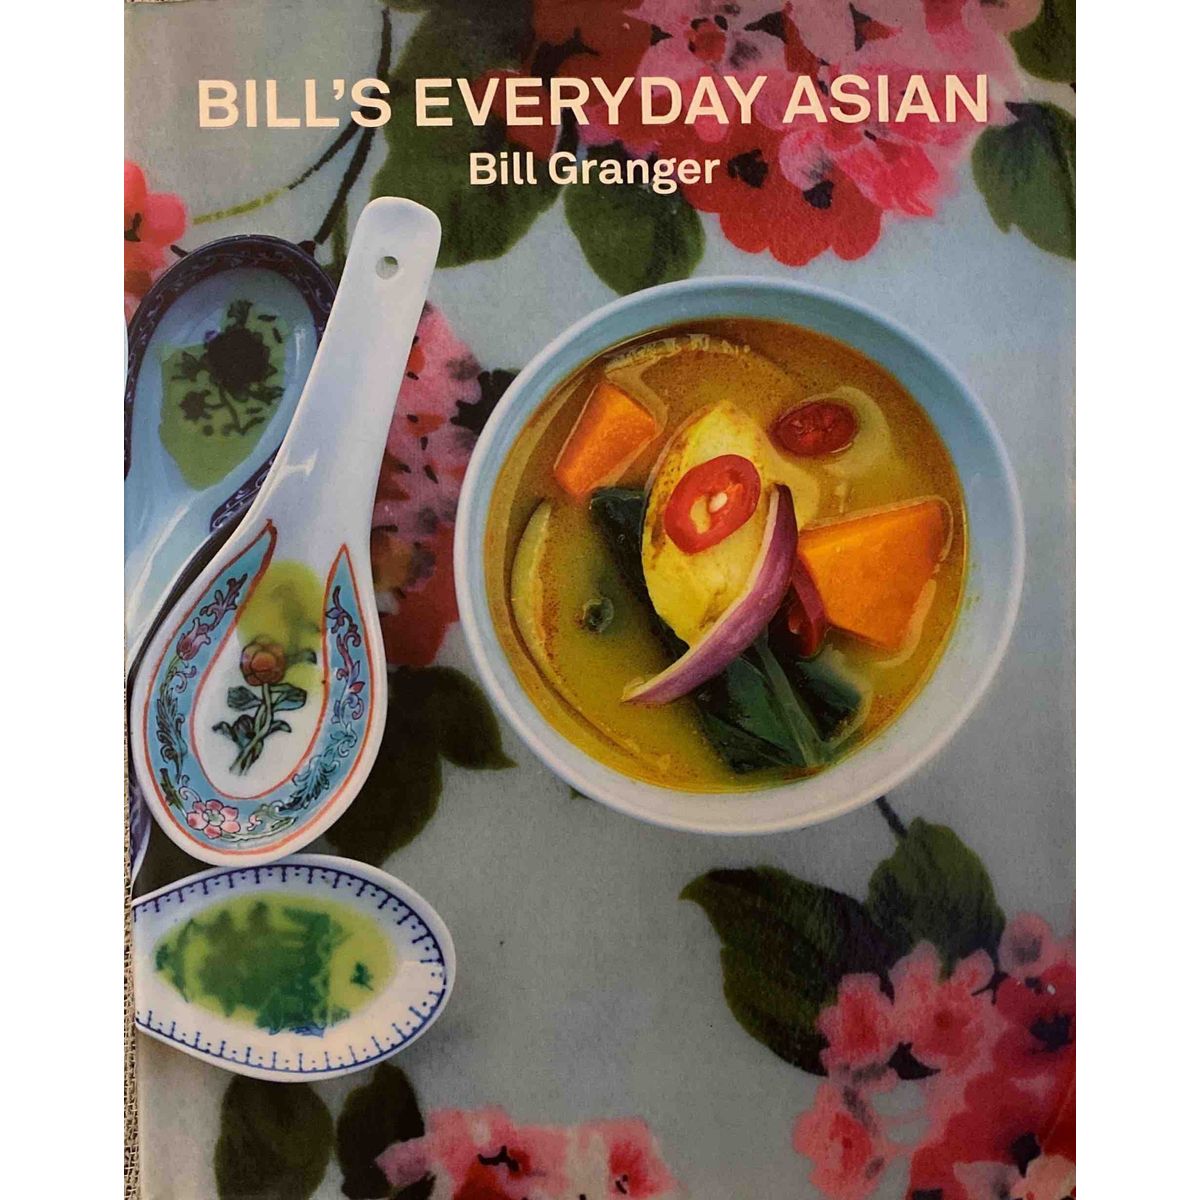 ISBN: 9781844009787 / 1844009785 - Bill's Everyday Asian by Bill Granger [2011]